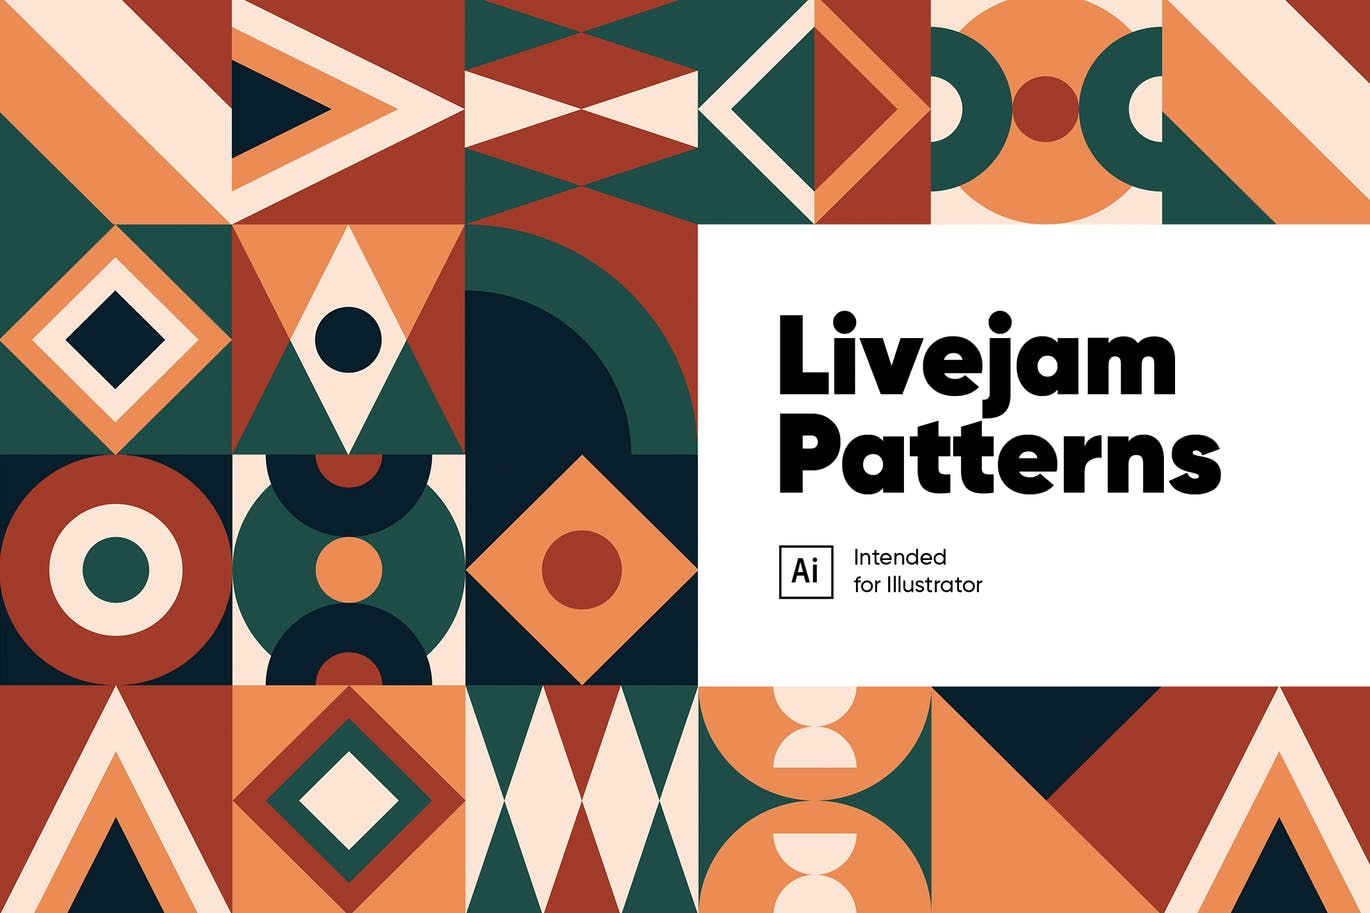 Livejam抽象图案背景素材天下精选 Livejam Abstract Patterns Pack插图